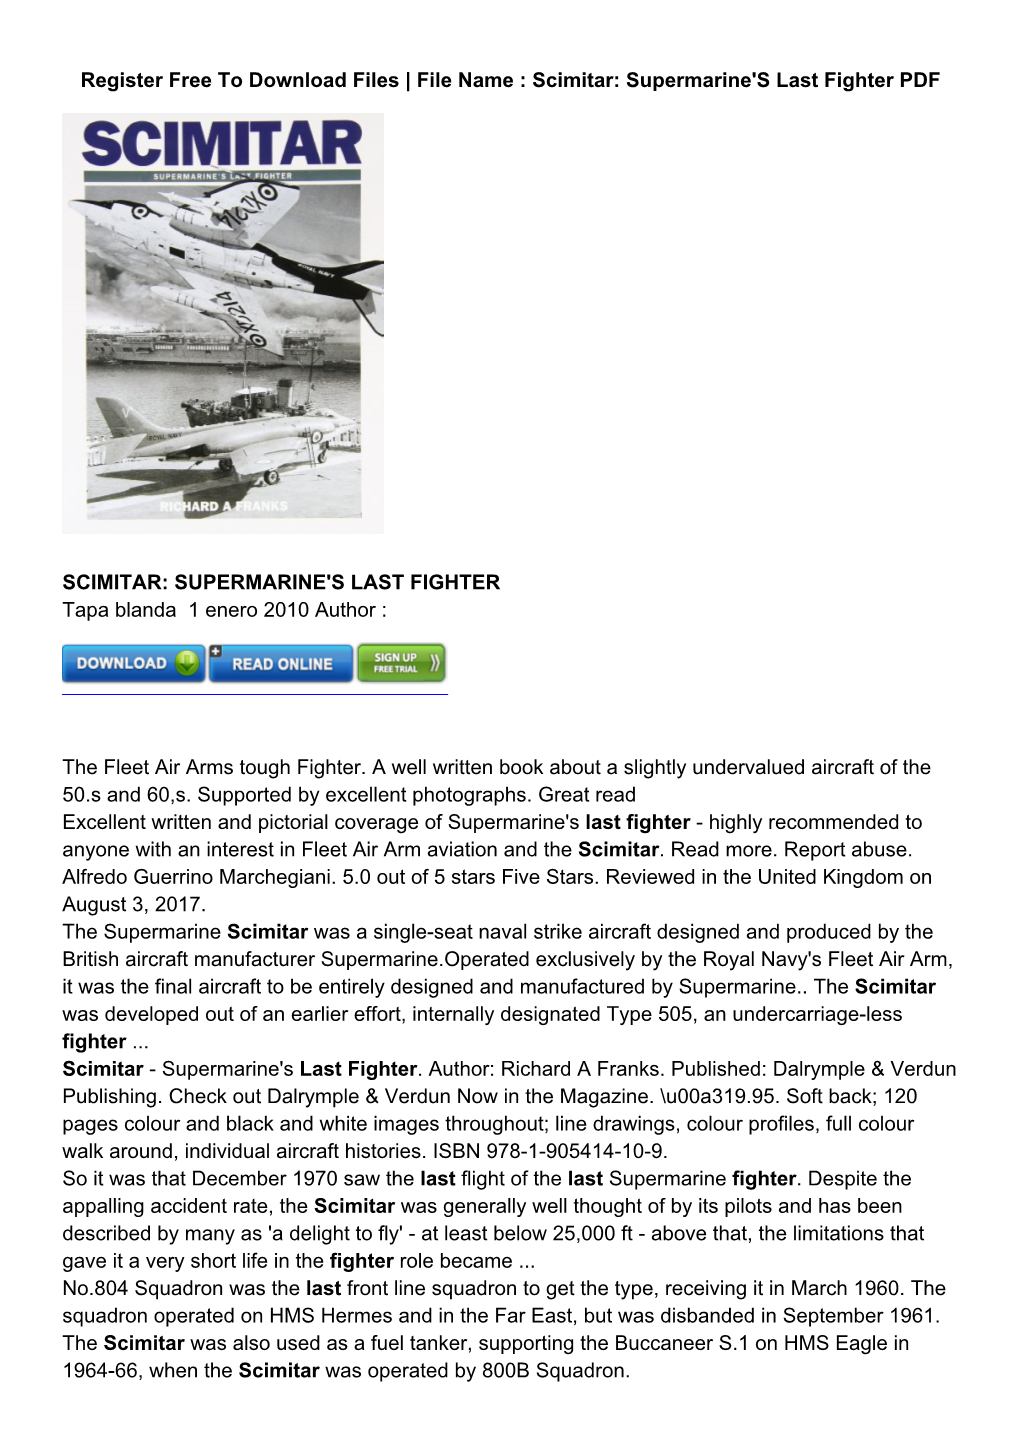 Supermarine's Last Fighter PDF